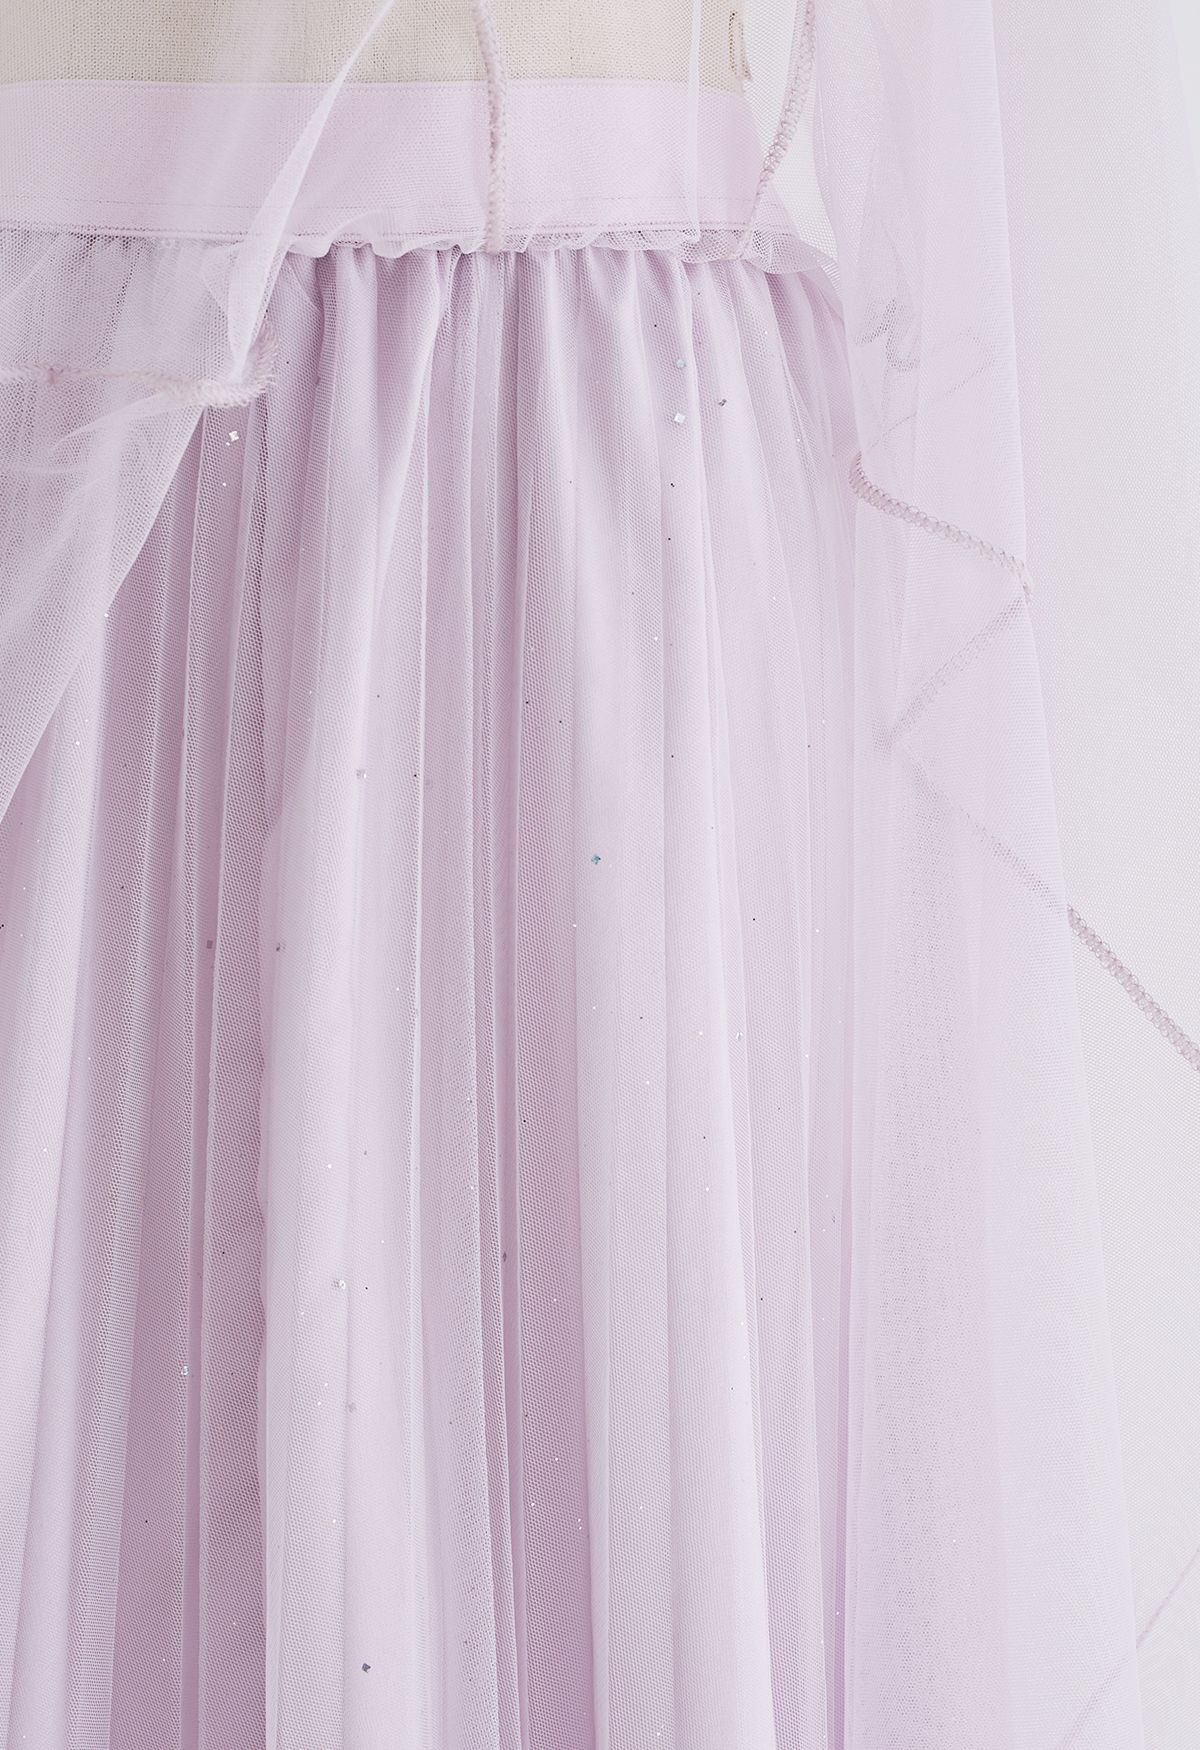 Venus Glitter Mesh Tulle Midi Skirt in Lavender